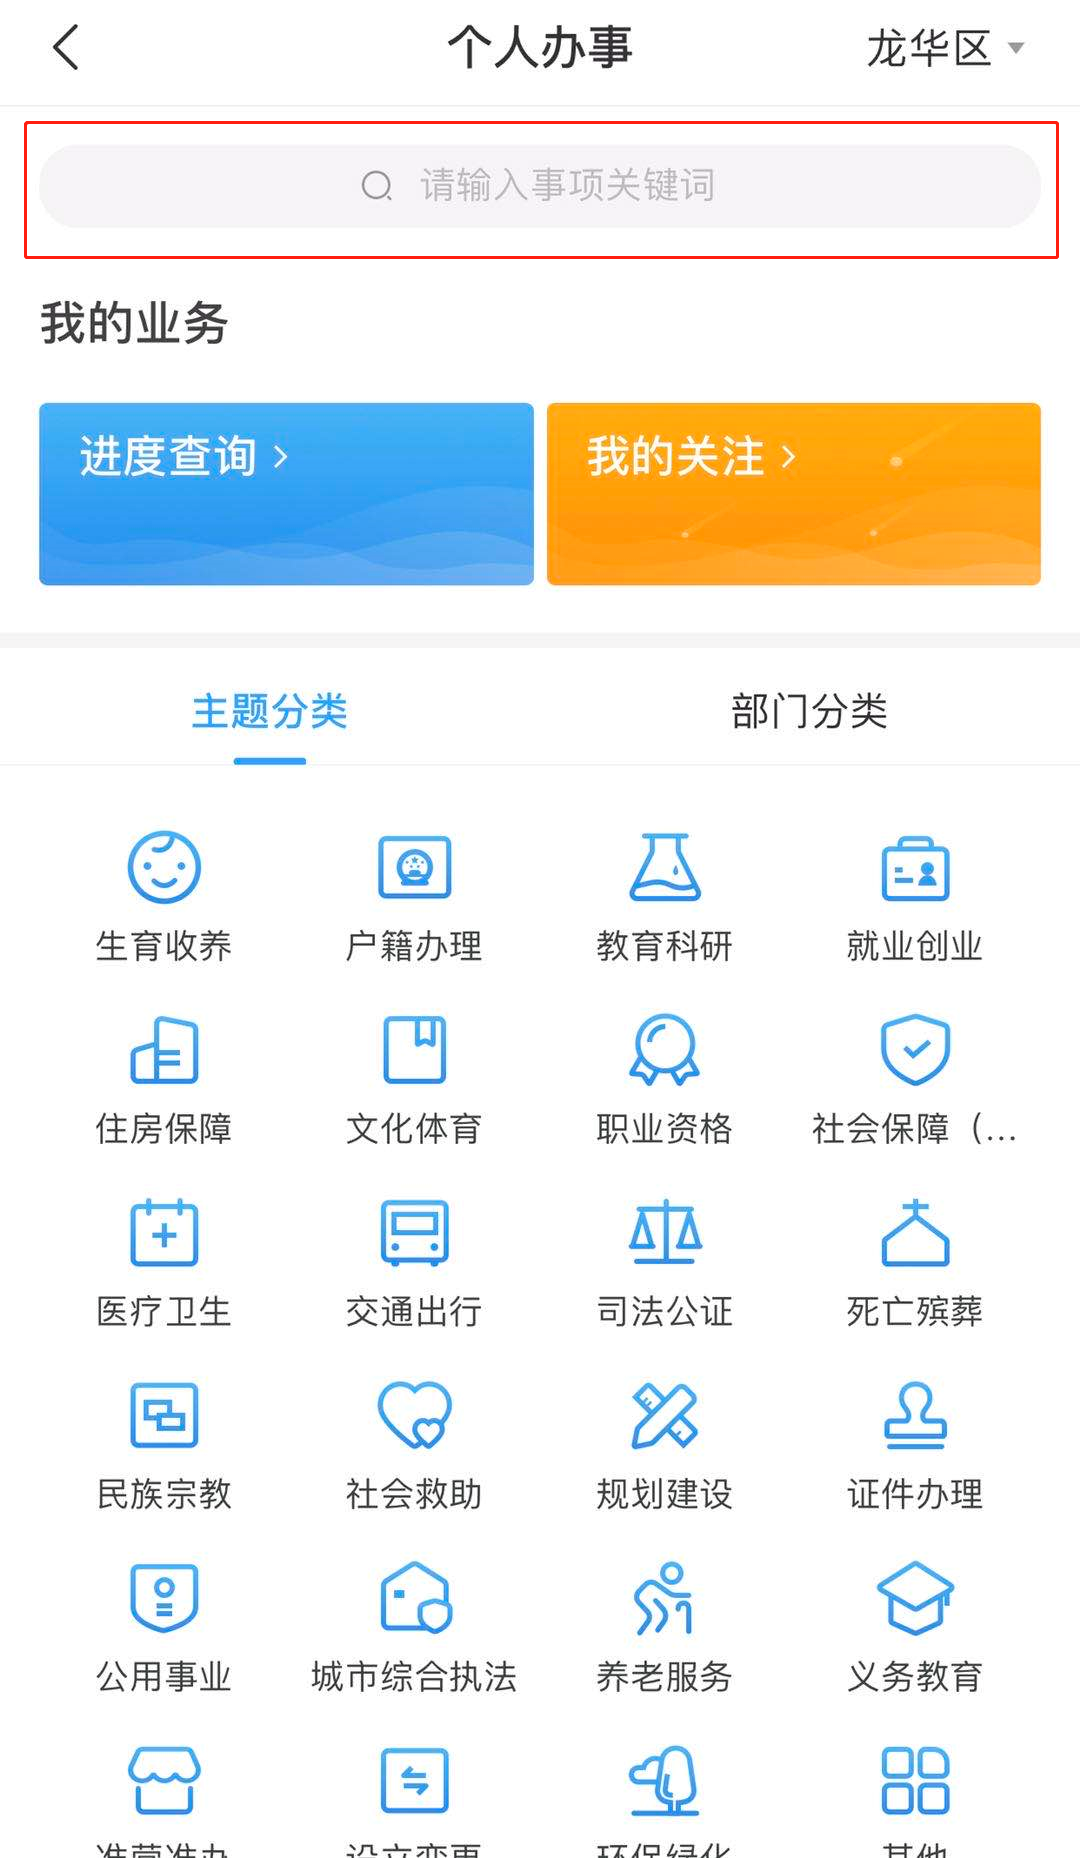 深圳之窗官方客户端app天龙八部荣耀版电脑端怎么放大窗